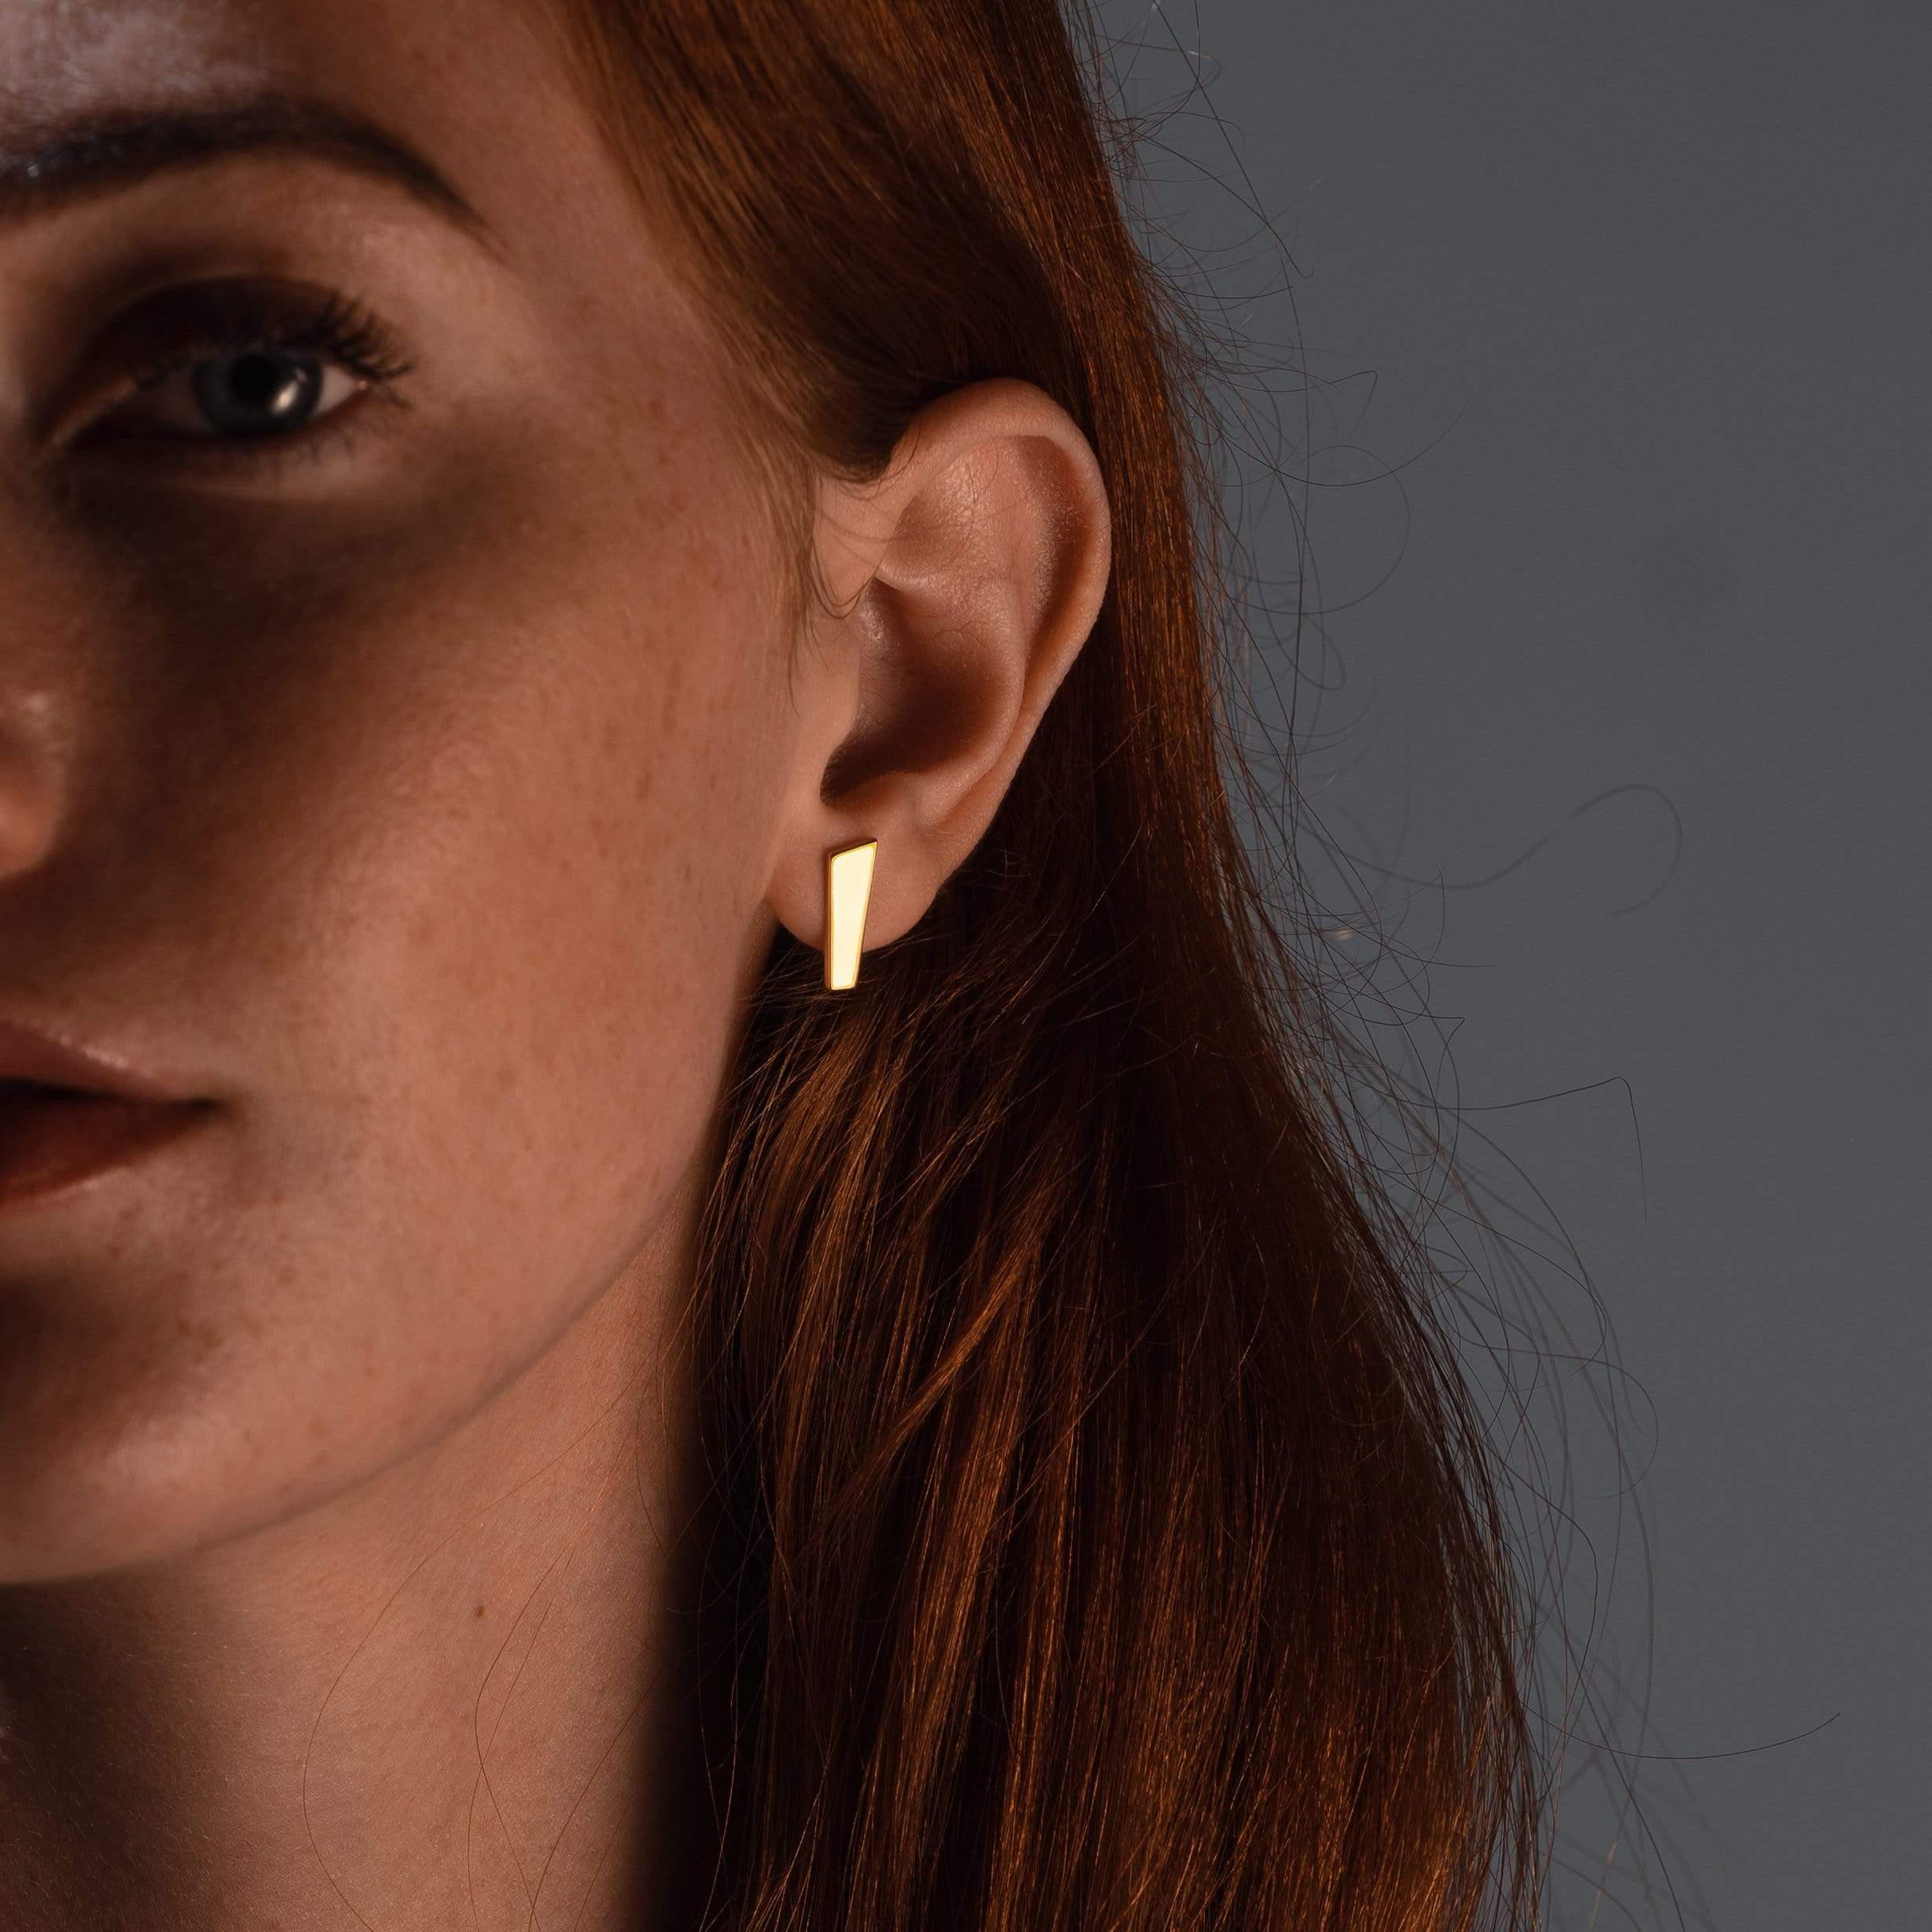 Malin wears earrings by Ekenberg Scandinavia